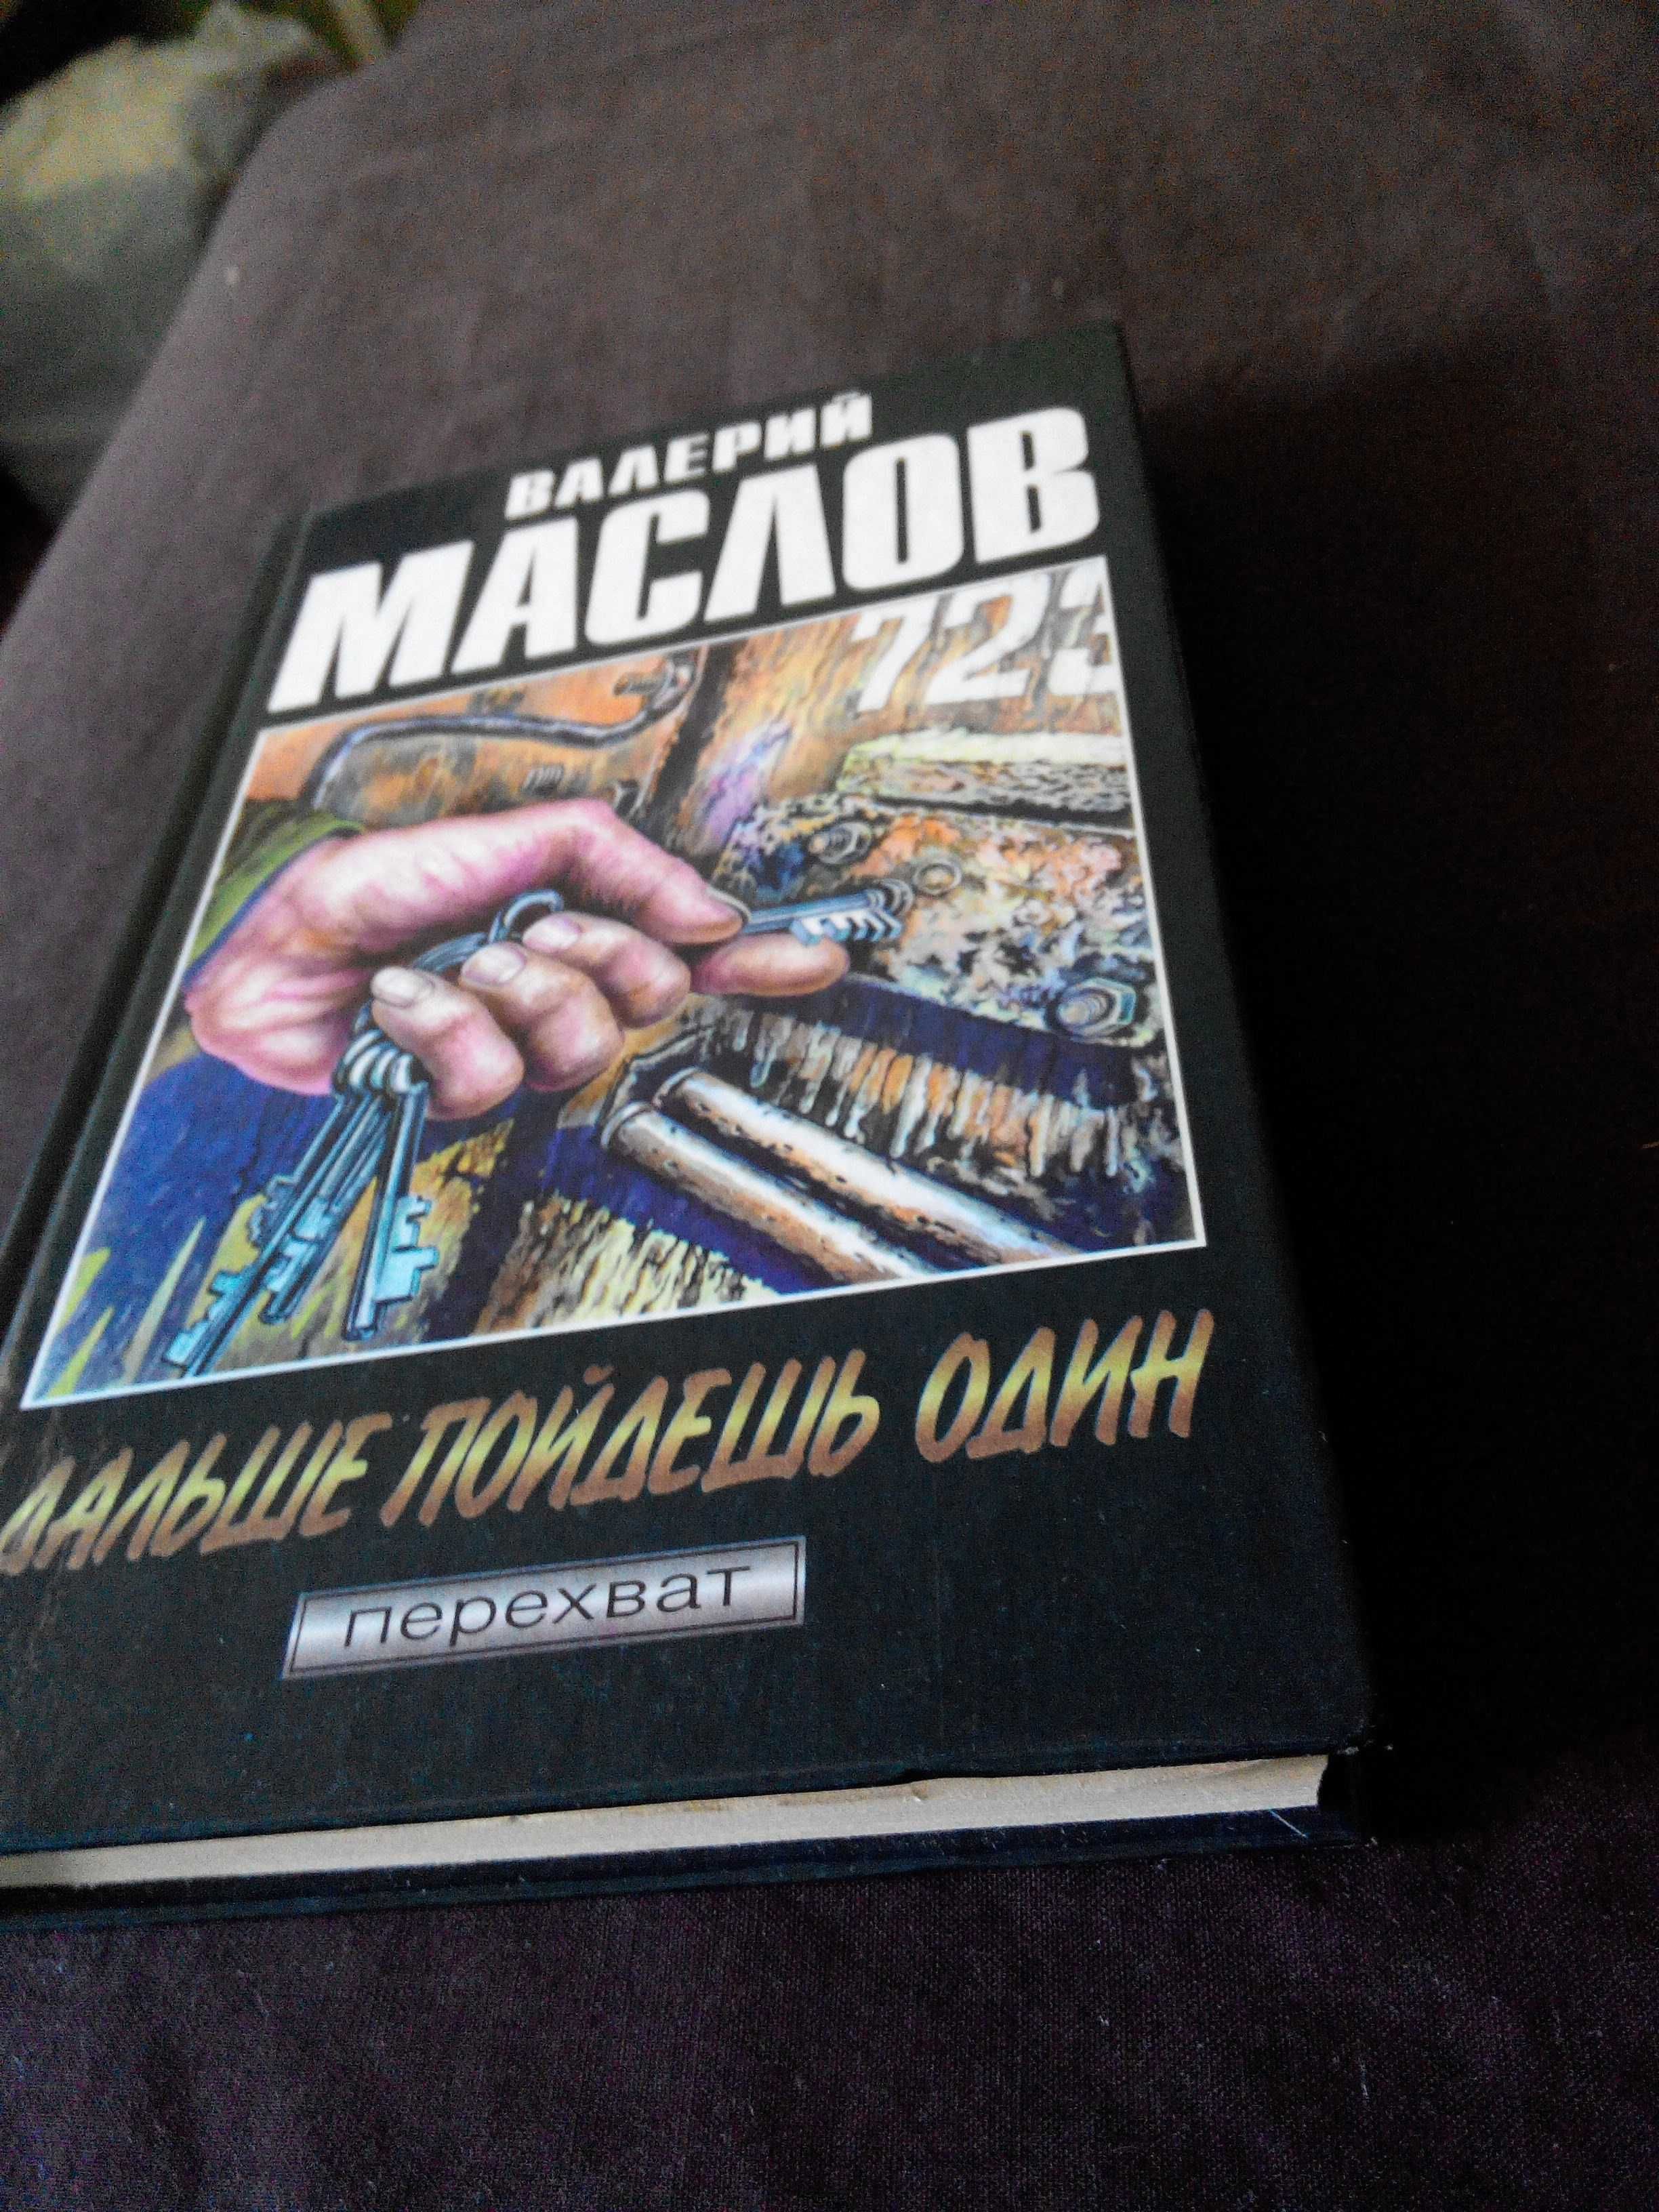 Валерий Маслов "Дальше пойдёшь один", роман.